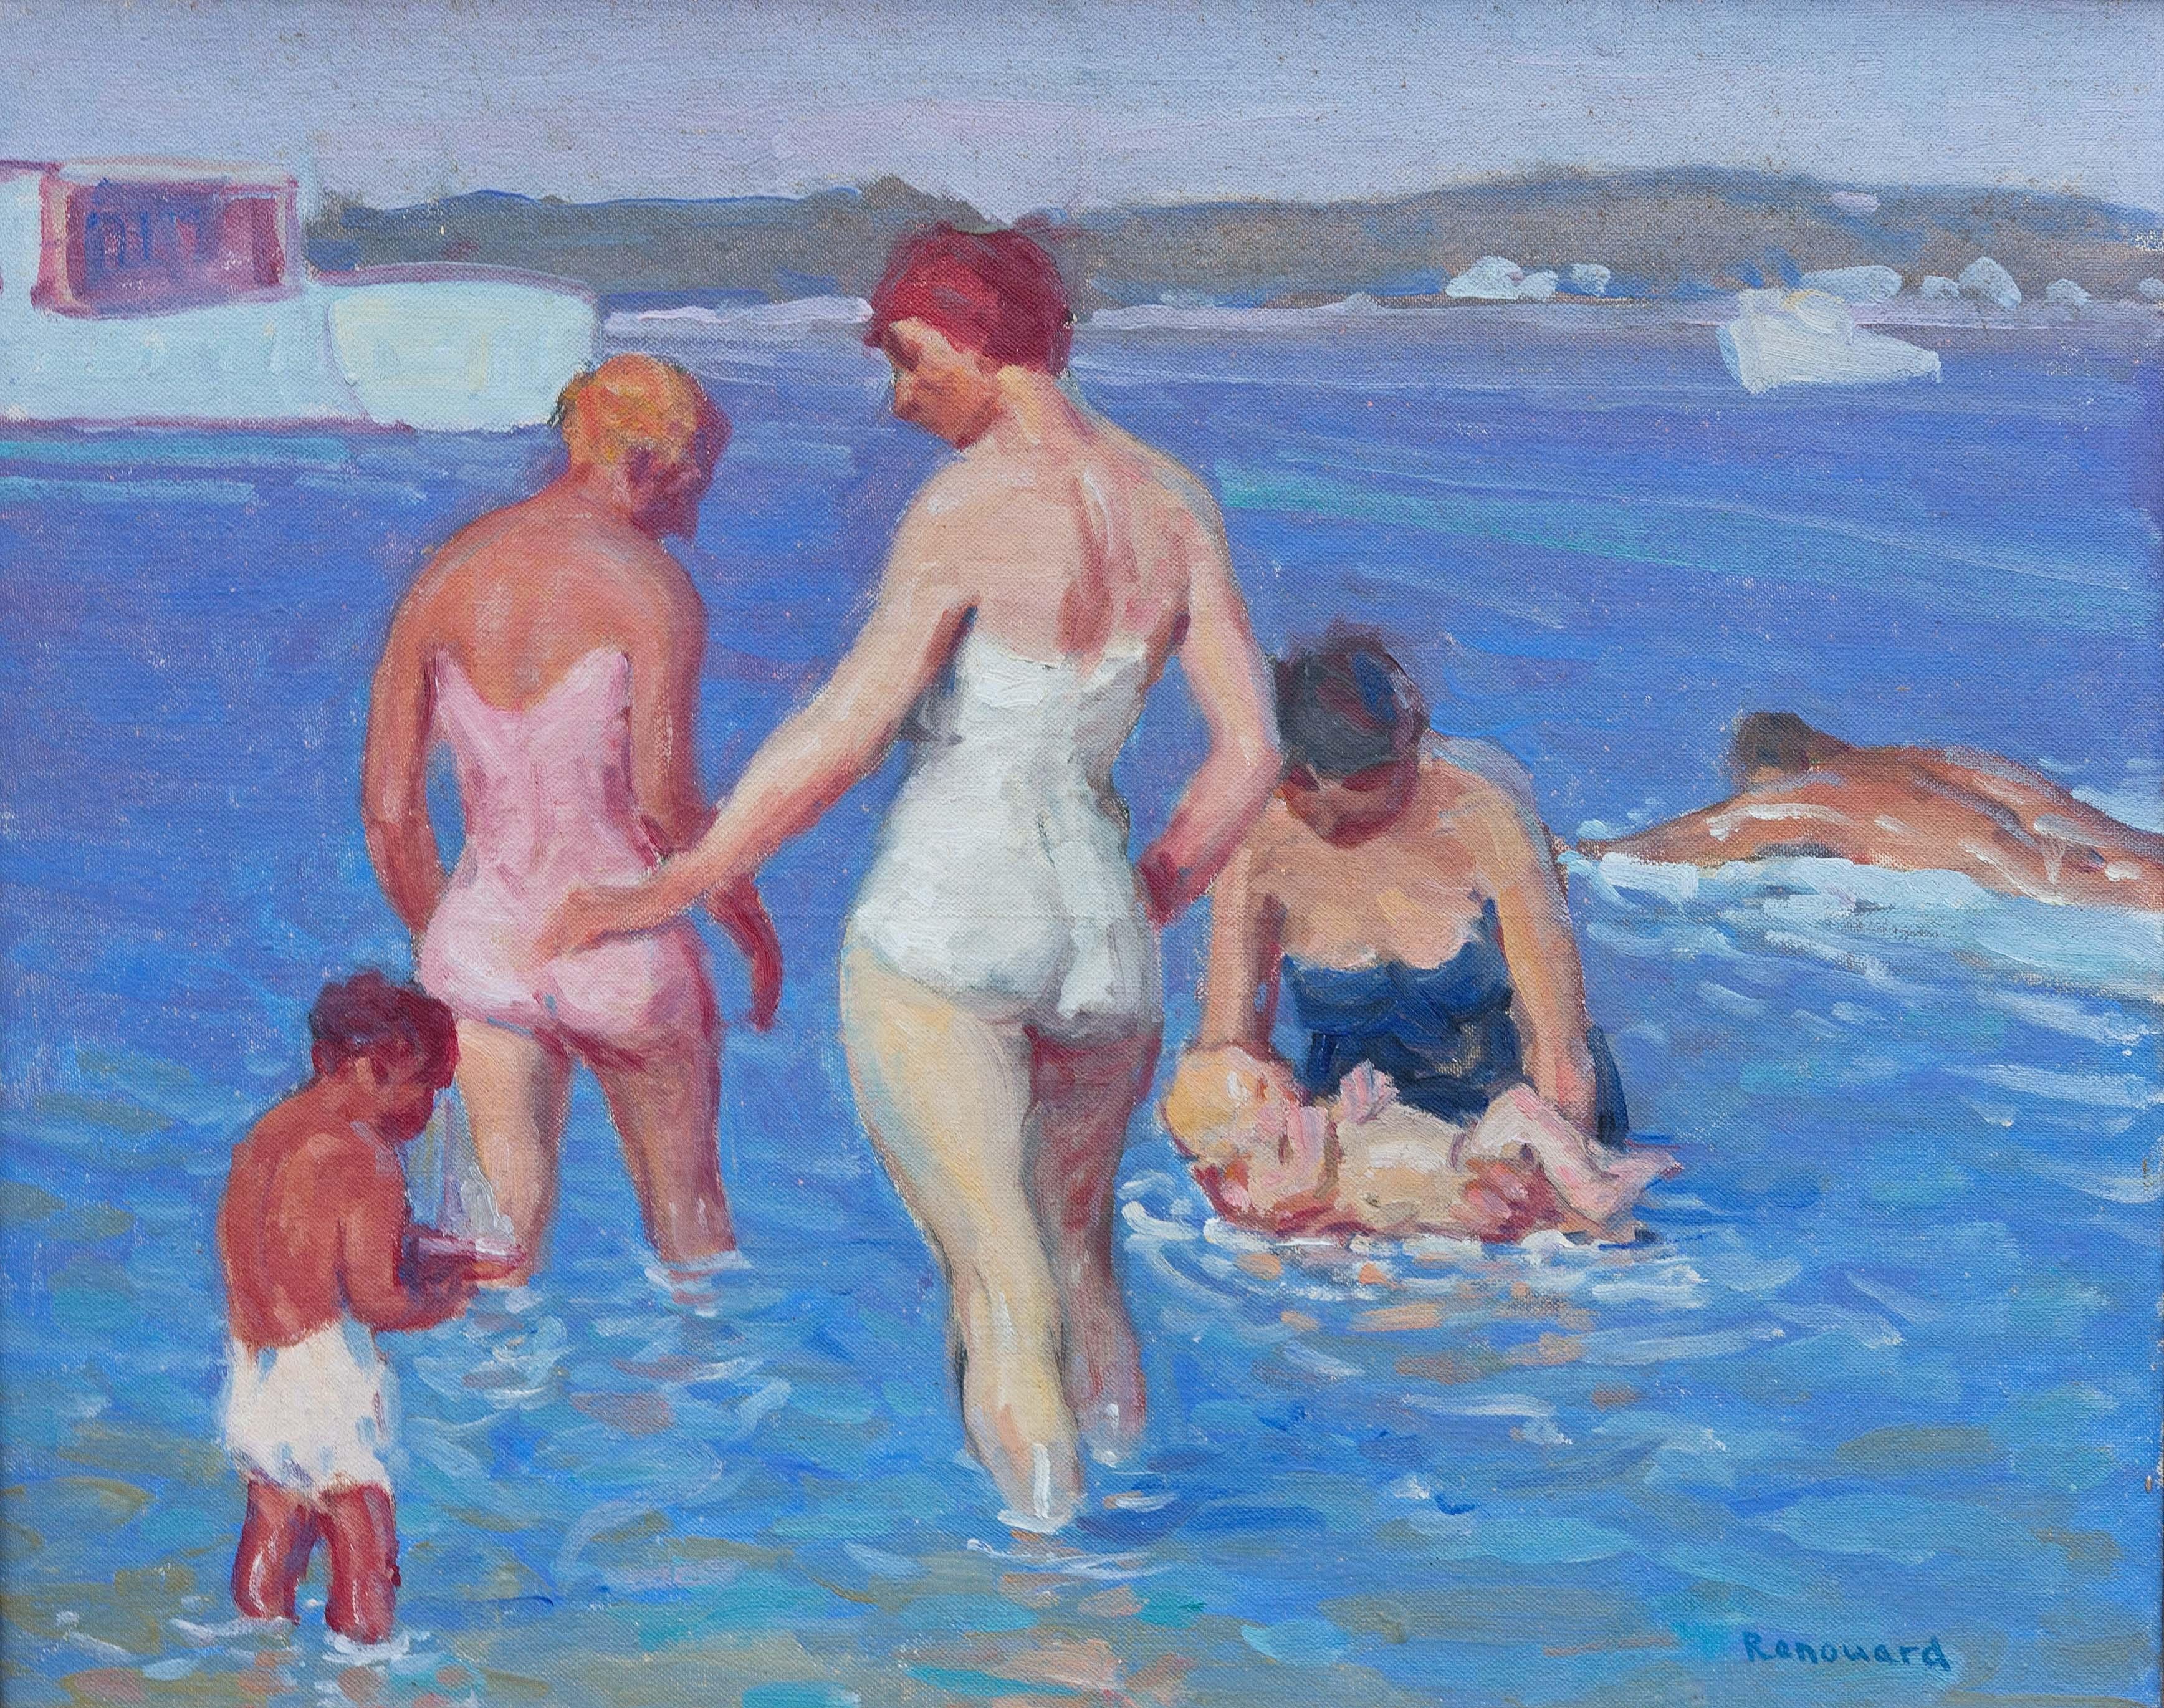 Amerikanisch-impressionistische Strandszene von George Renouard. Das Gemälde zeigt eine Familie von Badenden am Ufer. Die Figuren sind dreidimensional. Die Farben sind sowohl kräftig als auch sanft. Figurale Gemälde von Renouard sind selten. Dies